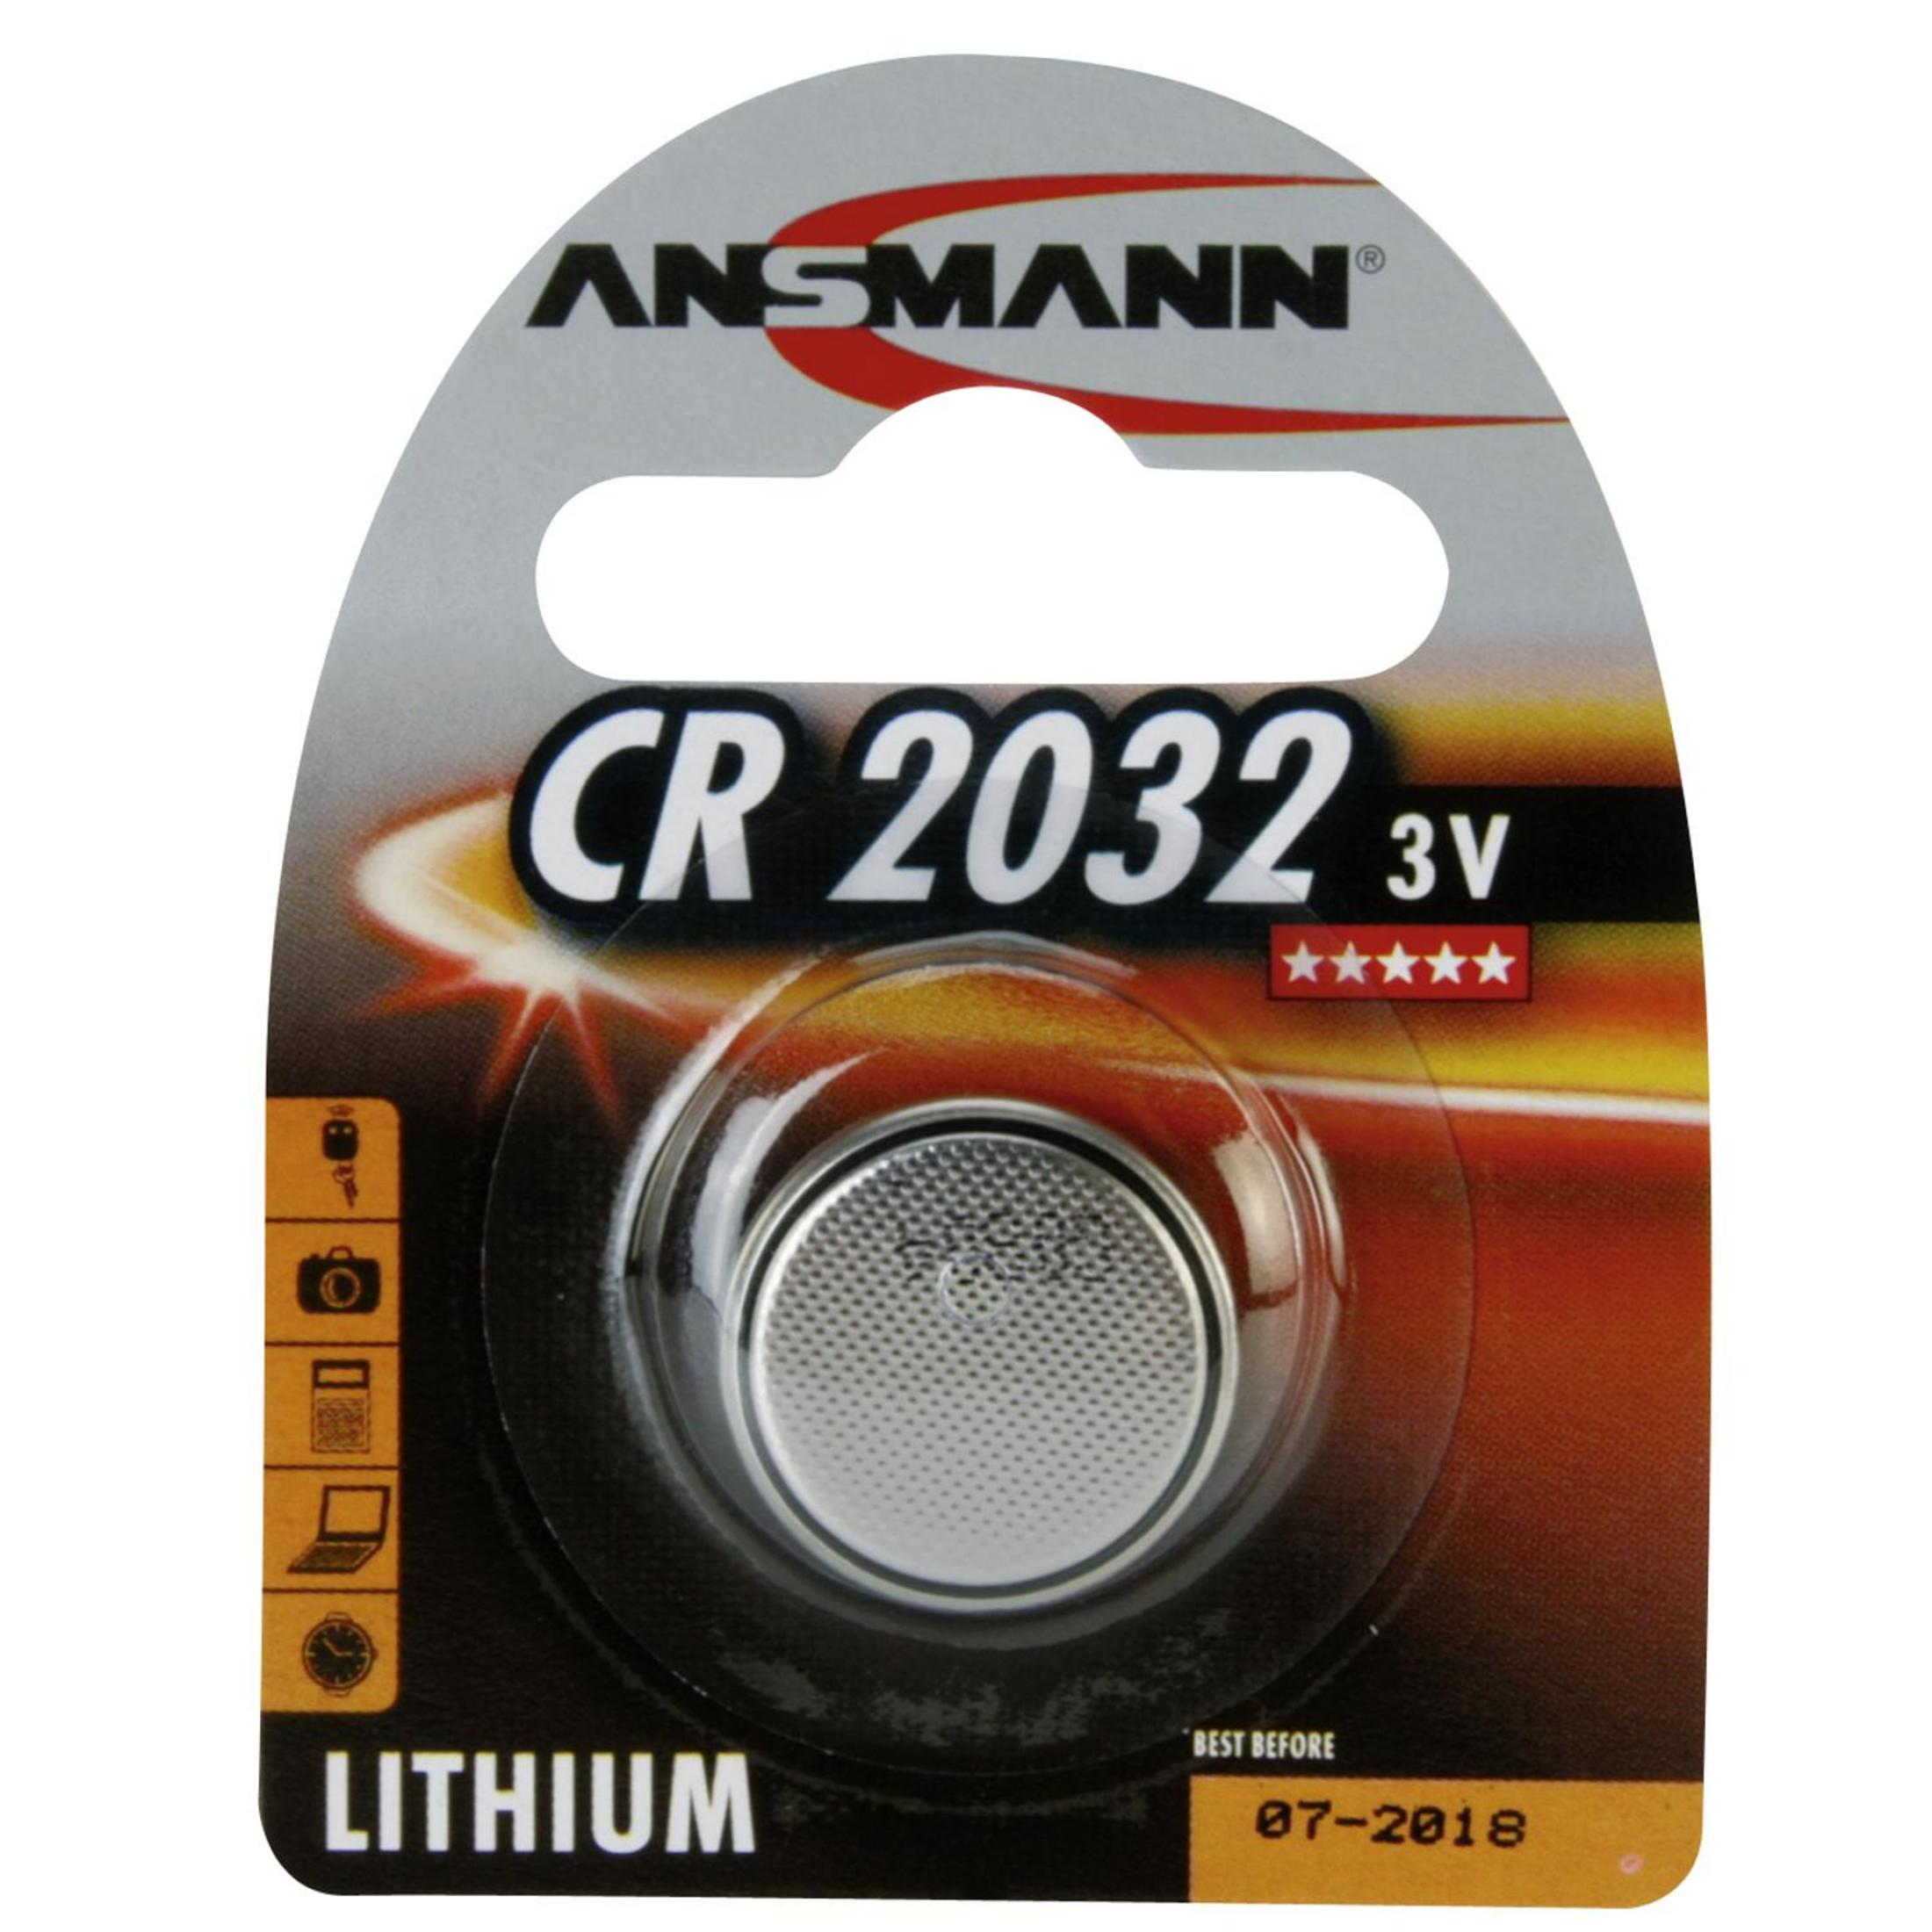 Lithium Lithium, / ANSMANN Knopfzellen 240 Strom 3V CR2032 3 Stück 1 Volt, Knopfzellen, Knopfzelle mAh ANSMANN 5020122 Mainboardbatterie